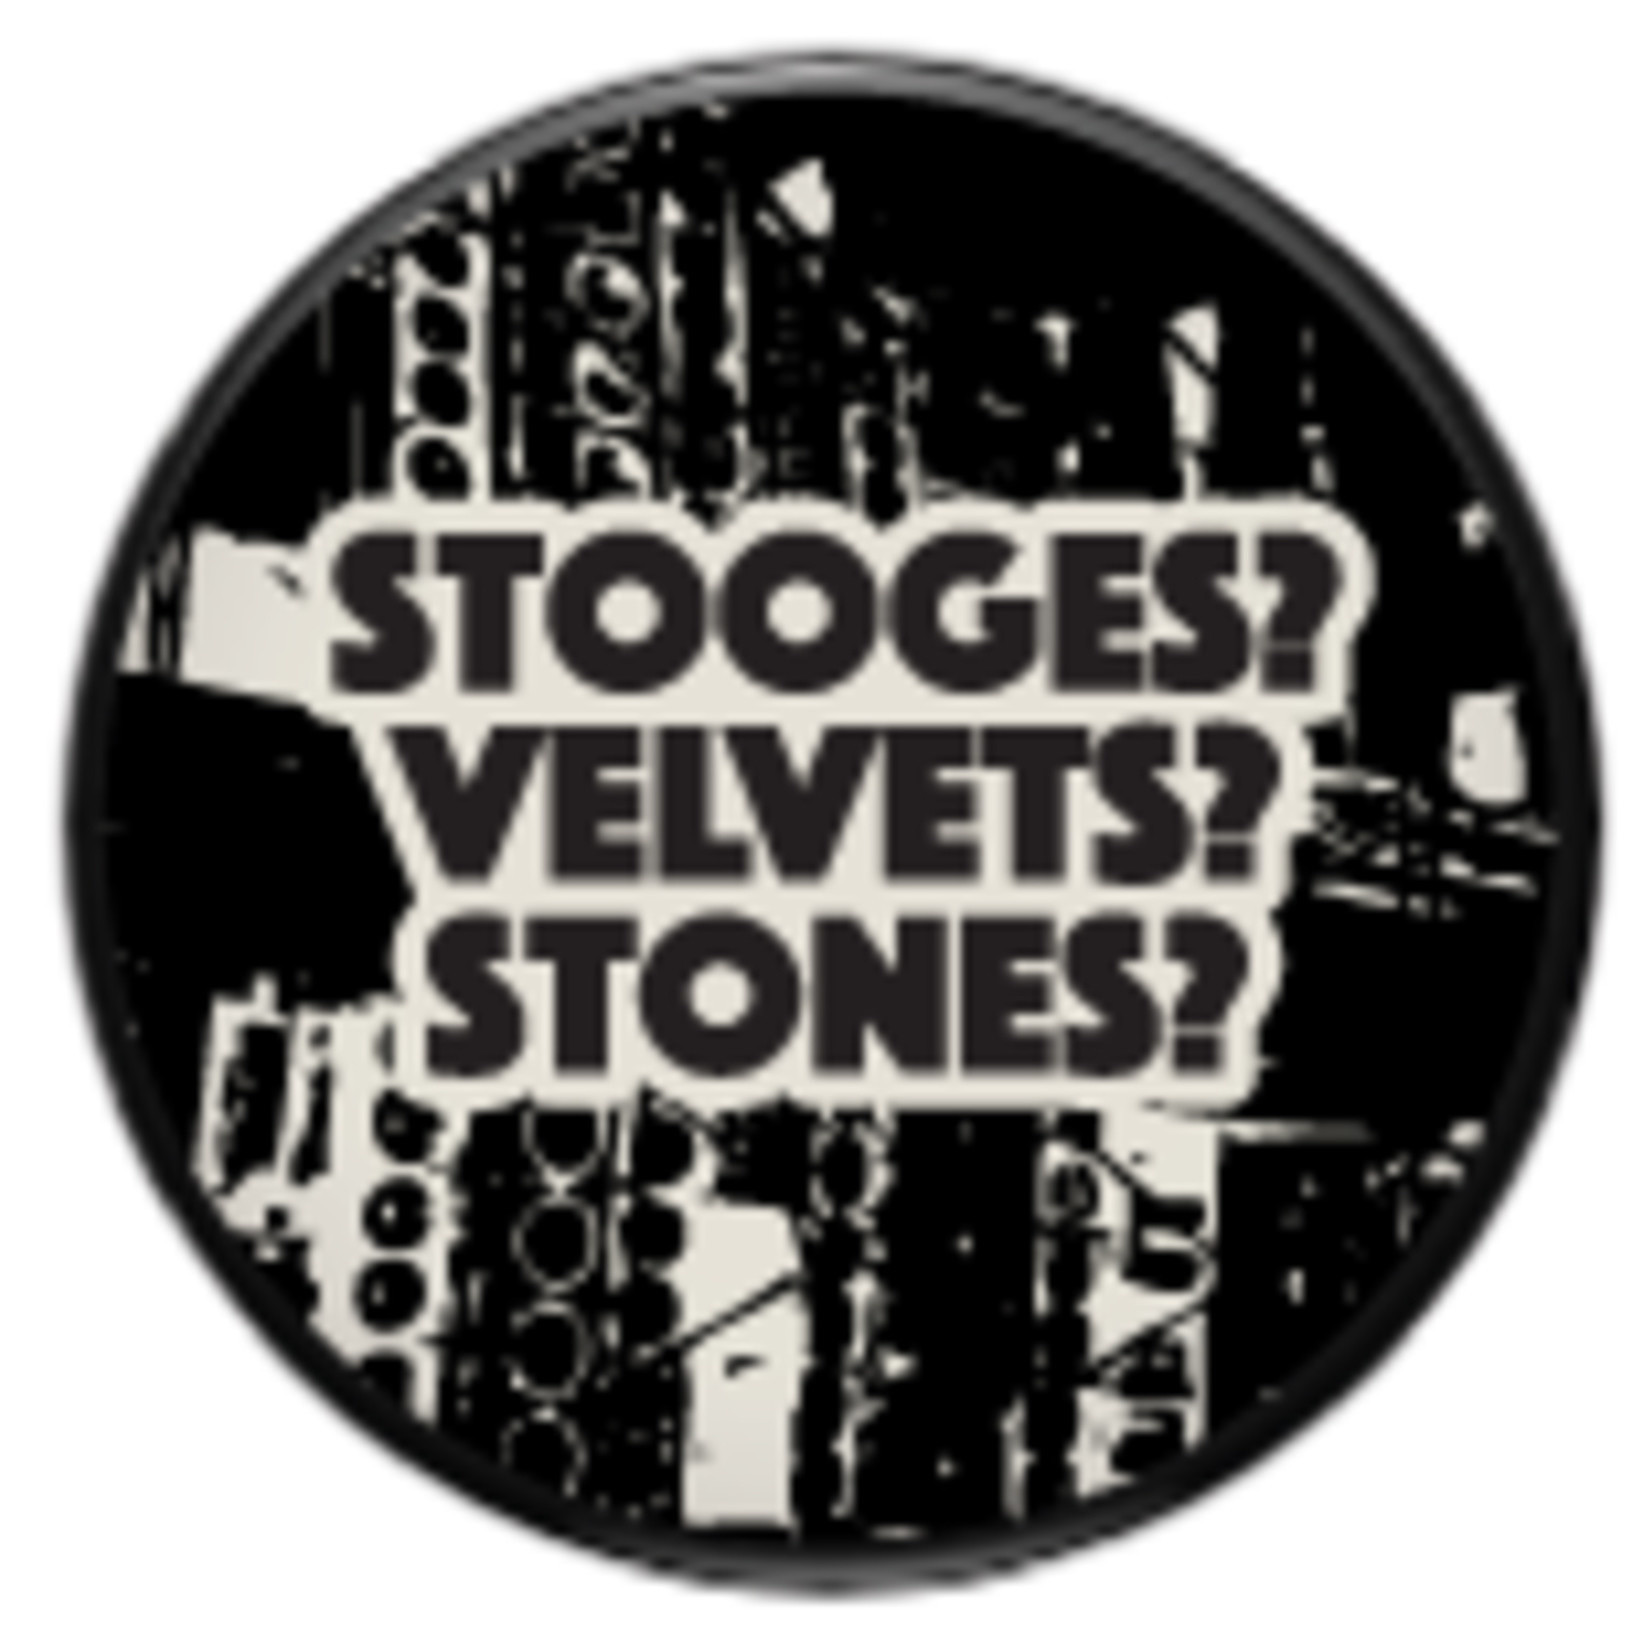 Magnet - Stooges? Velvets? Stones?